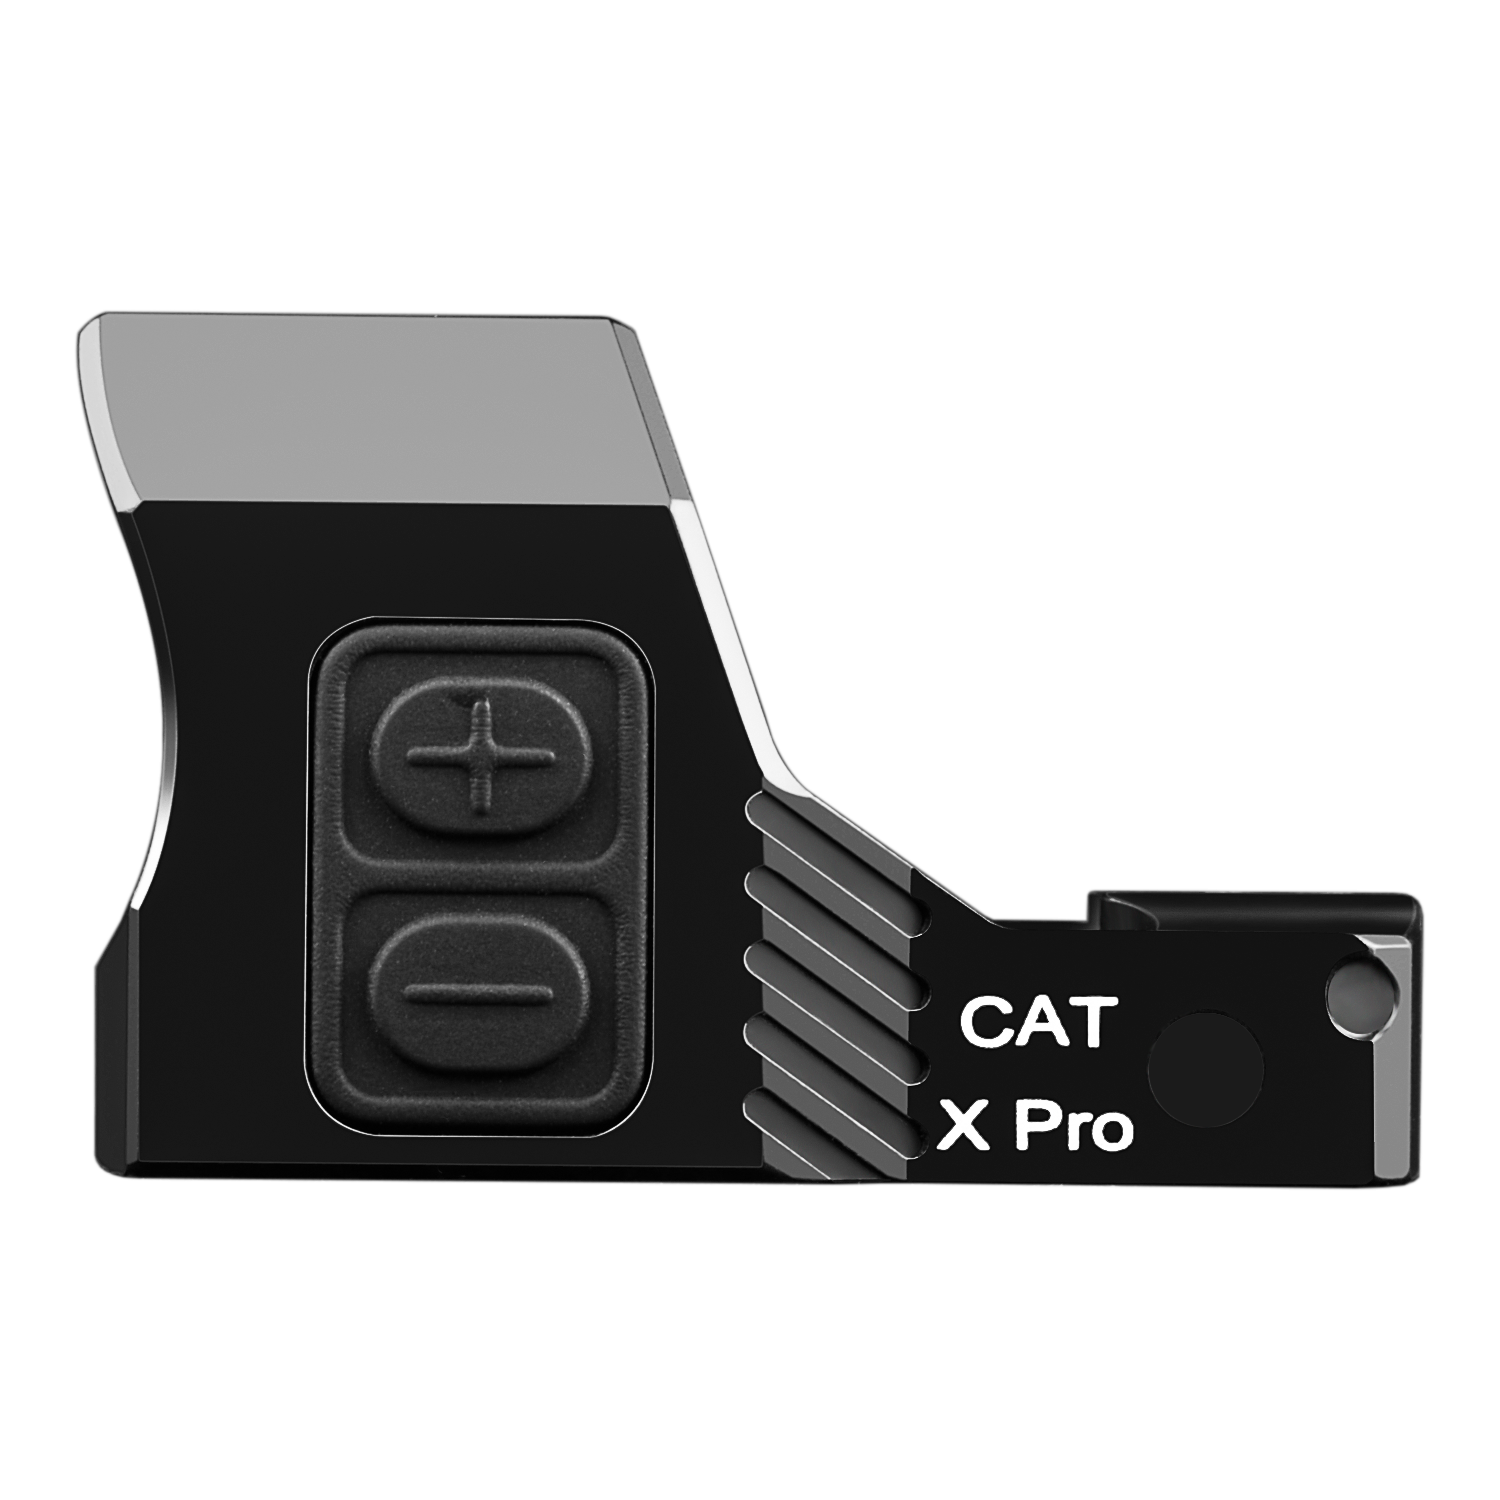 the cat x pro remote control unit